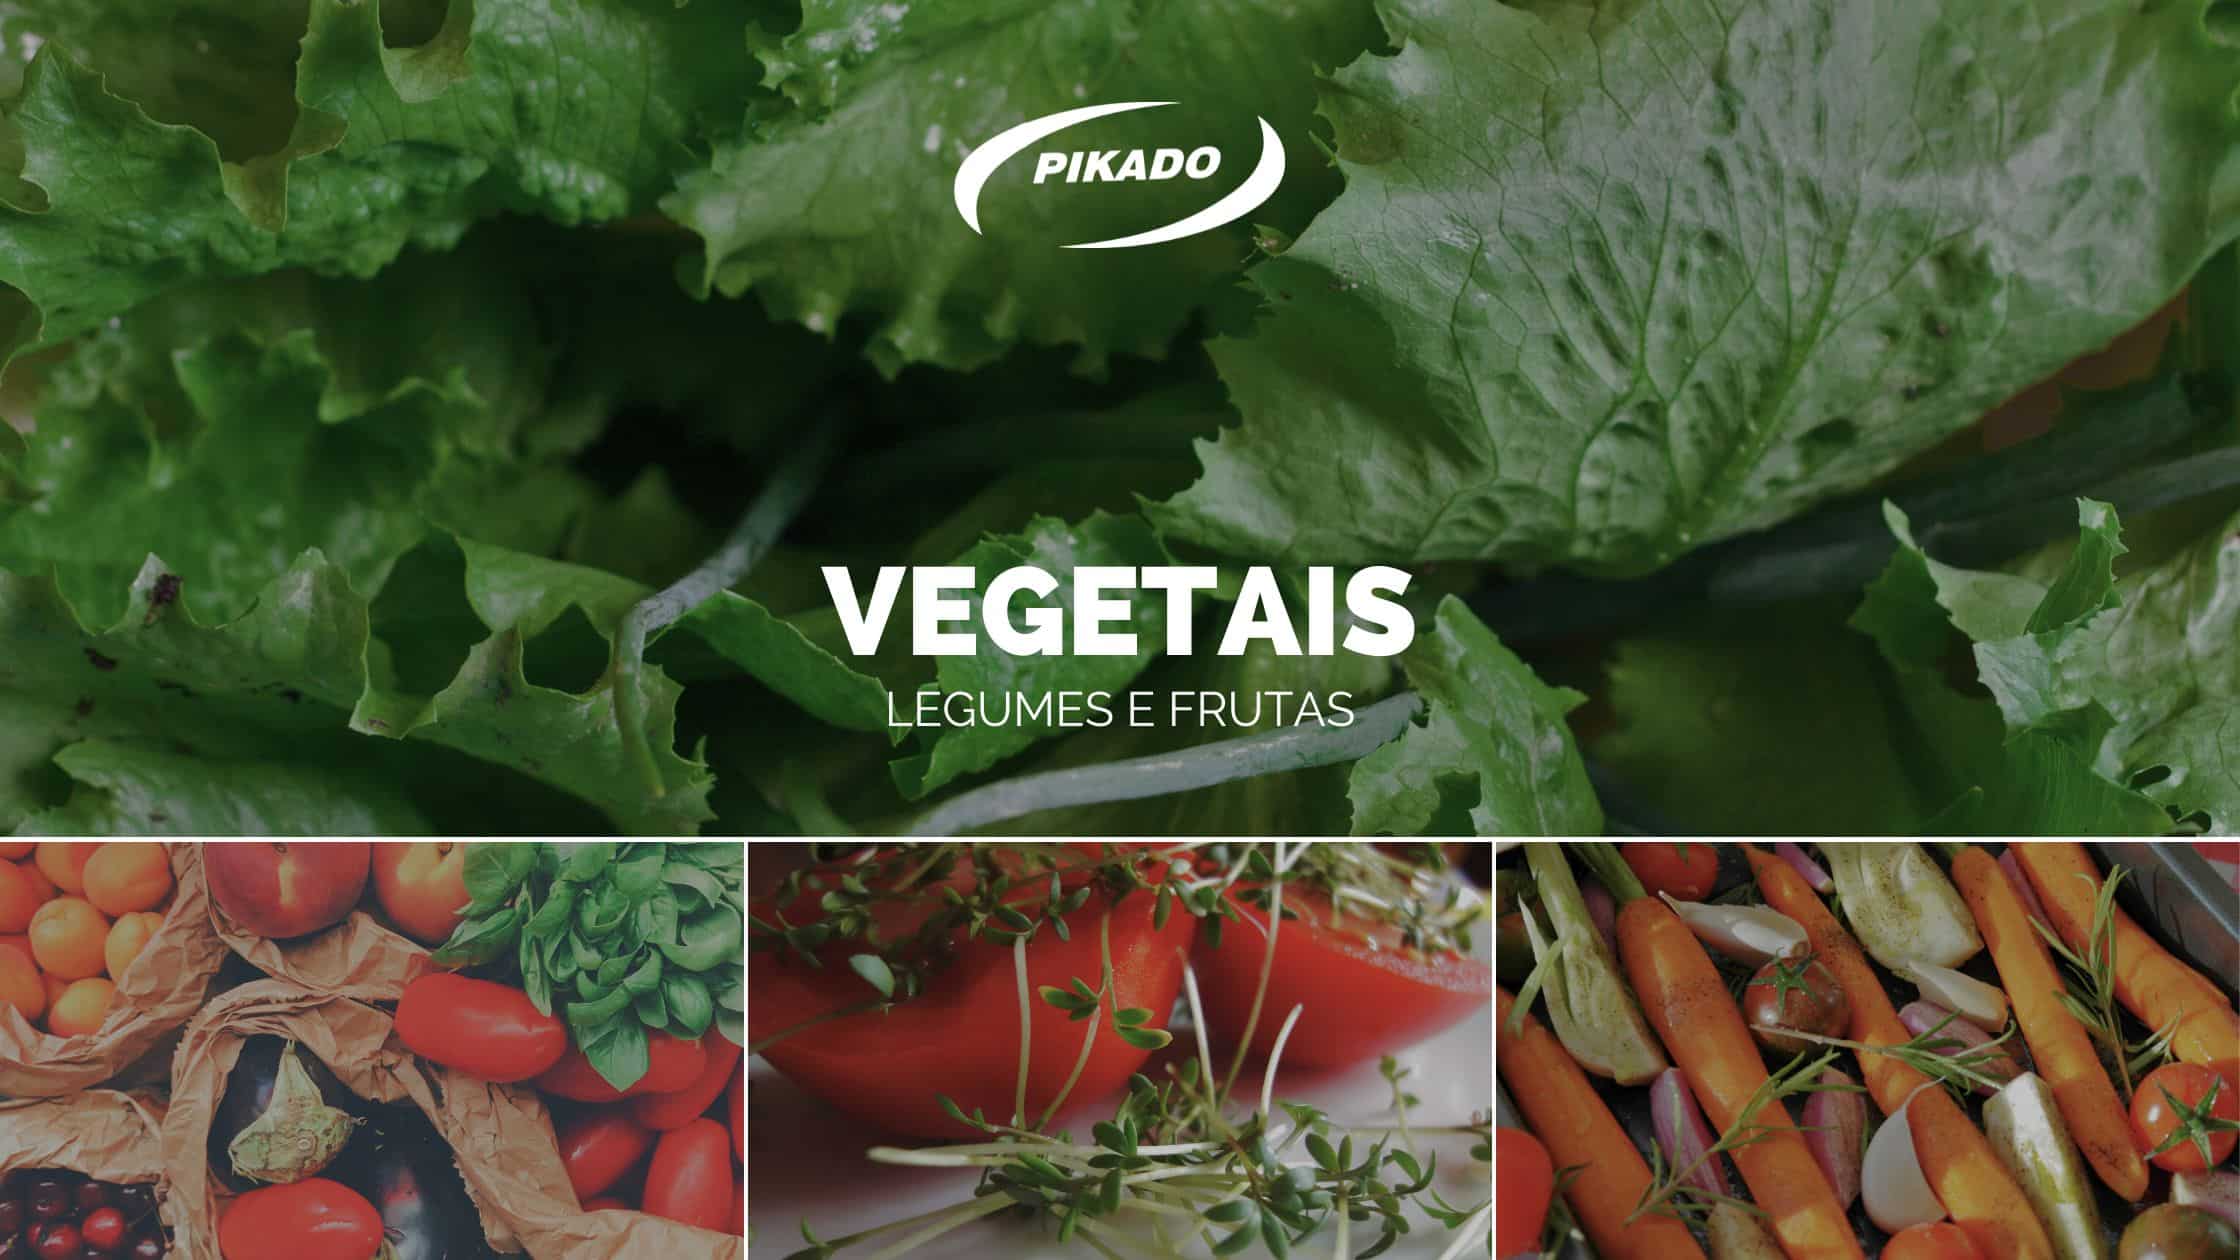 Verdura legumes e frutas